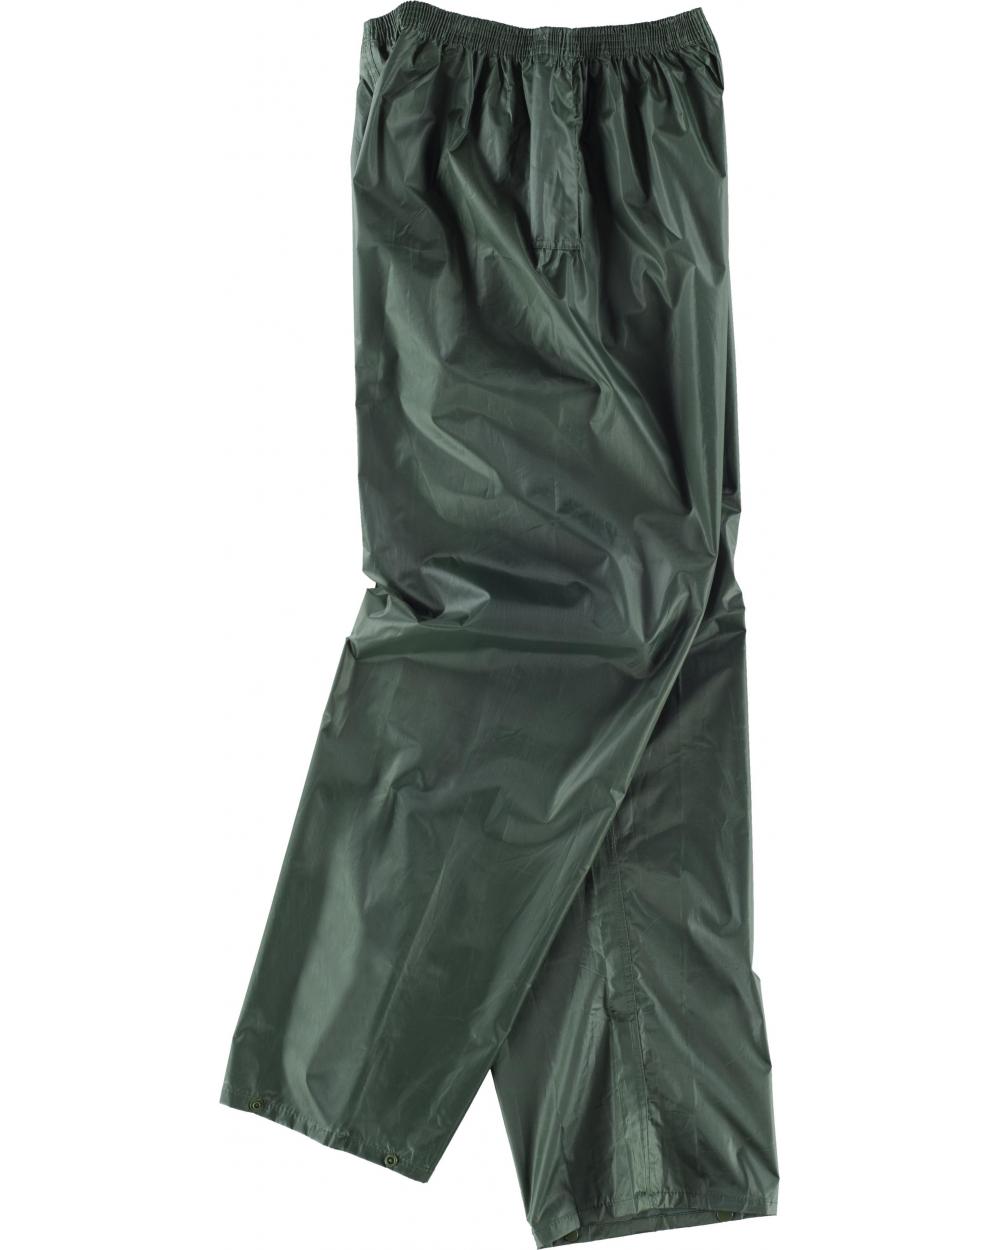 Comprar Pantalón impermeable S2014 Verde Oscuro online bataro